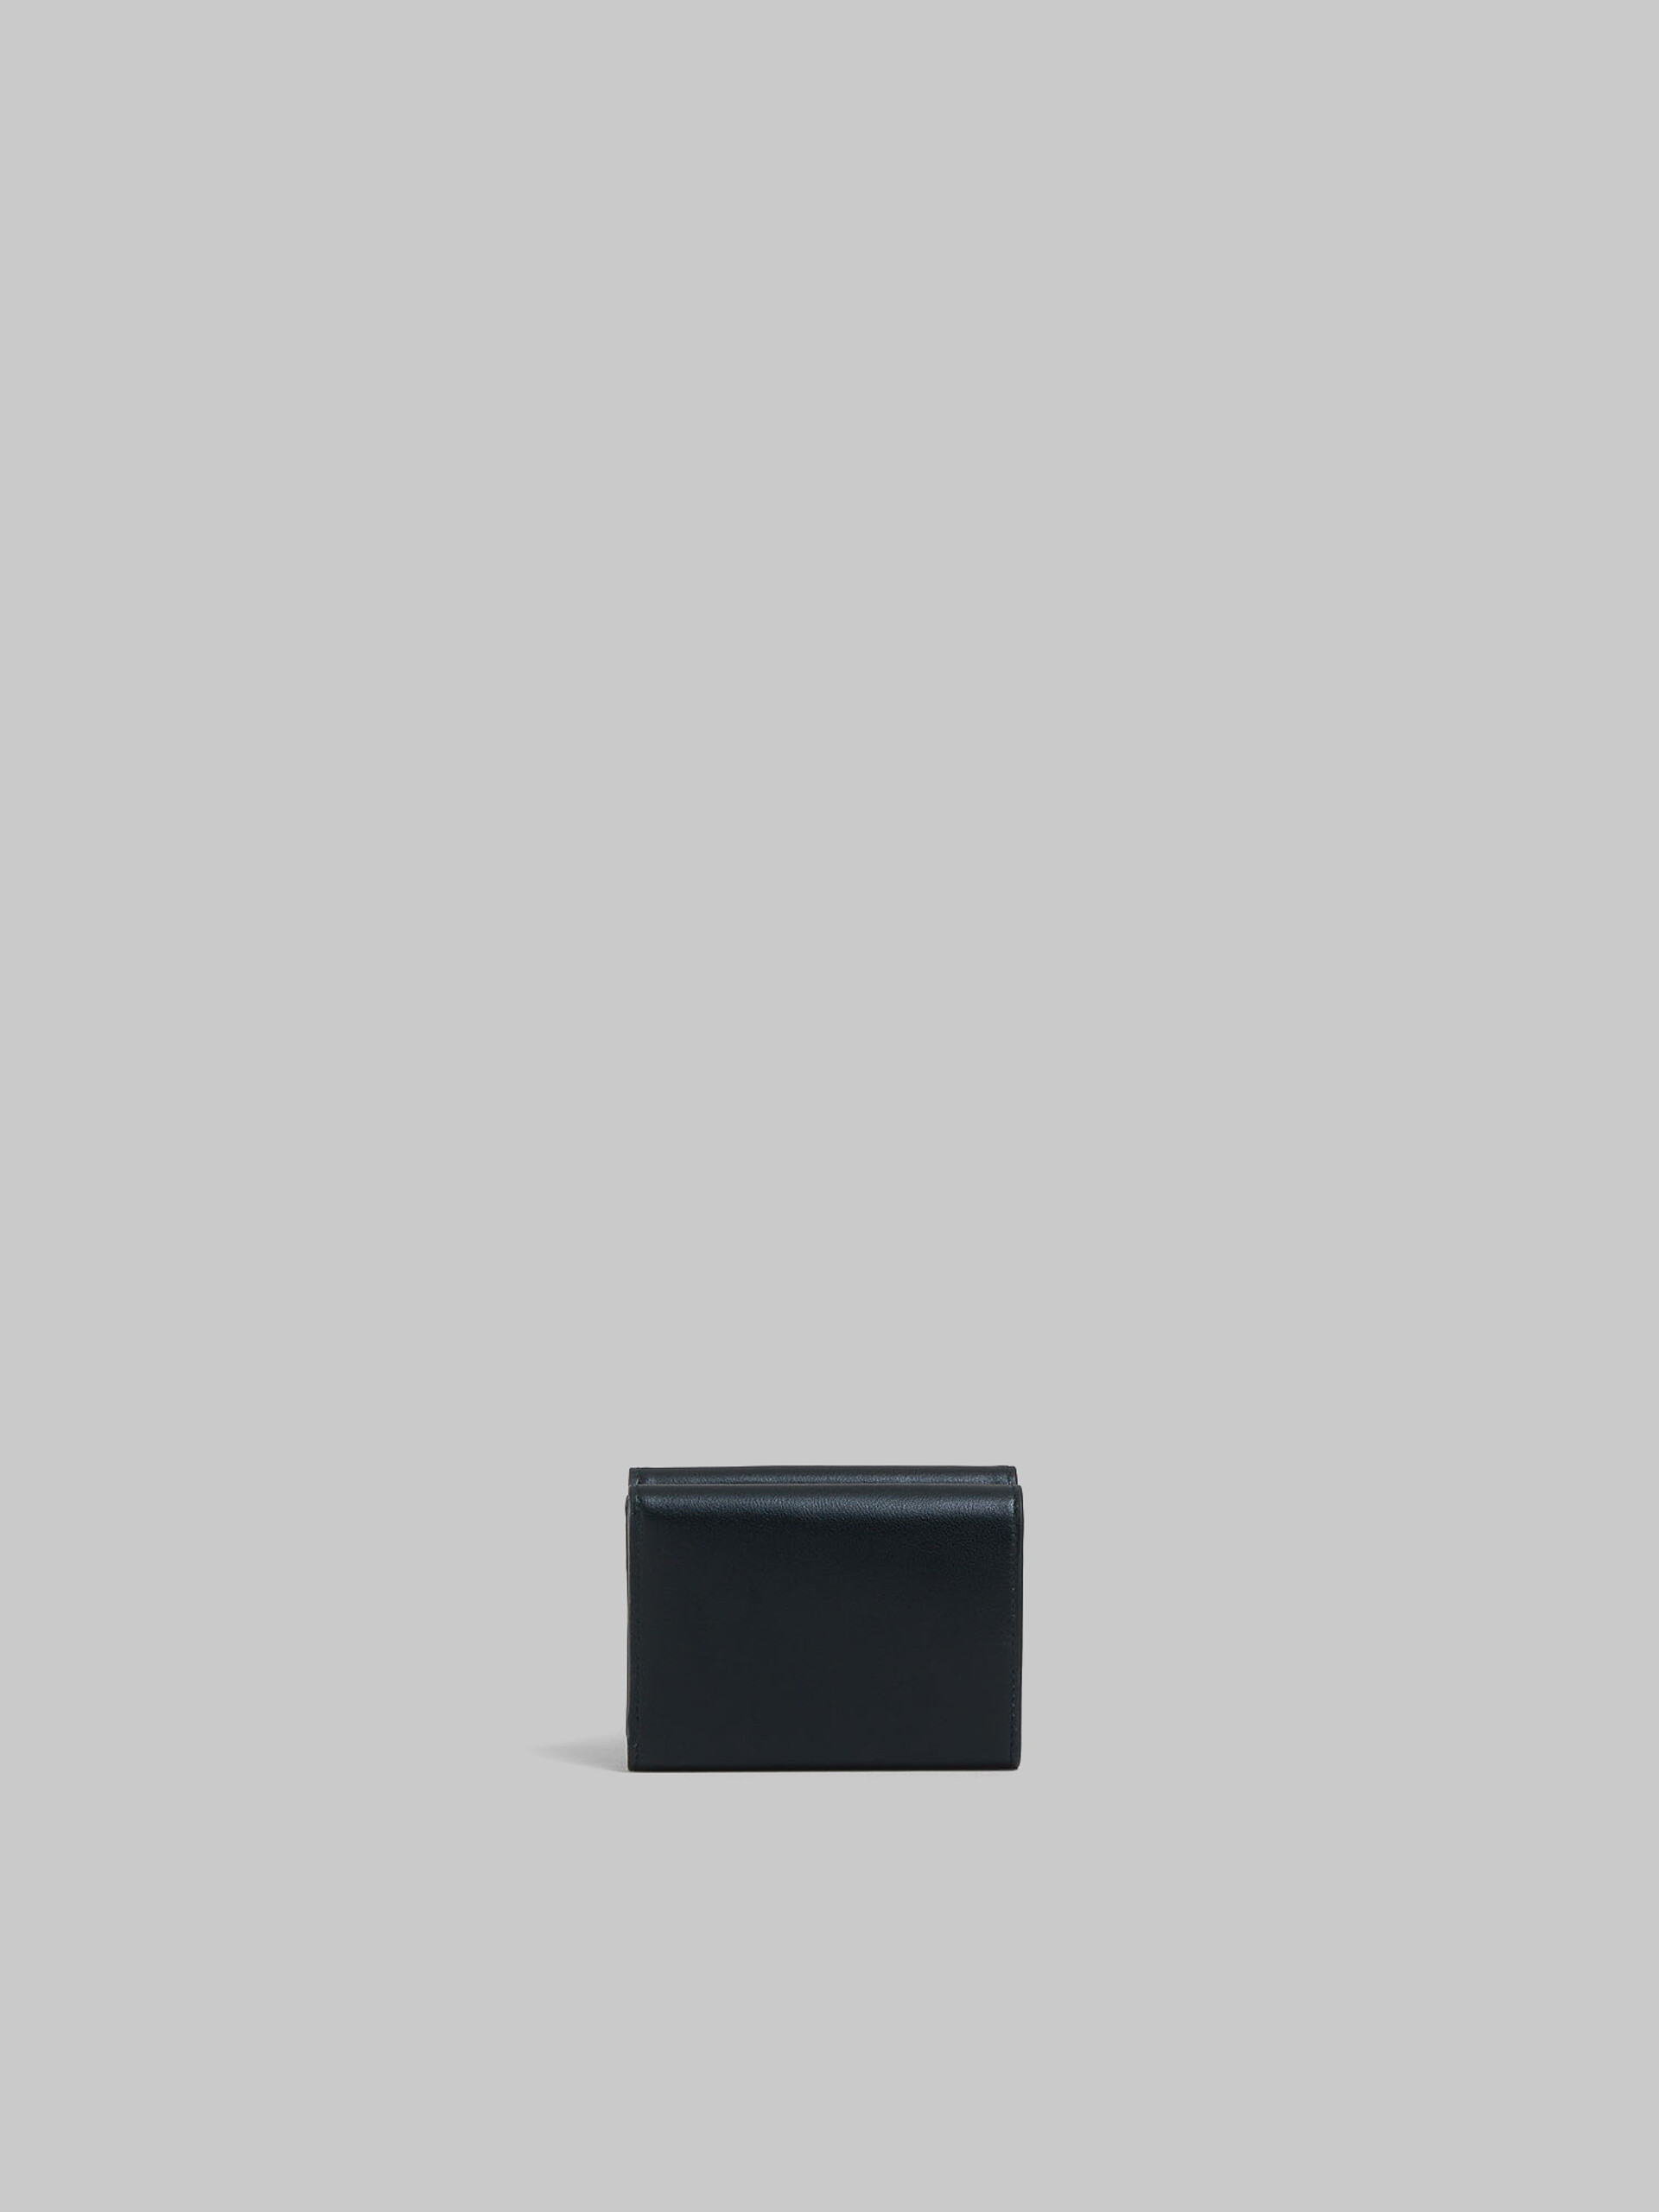 ブラック レザー製 三つ折りウォレット、レイズド マルニロゴ - 財布 - Image 3